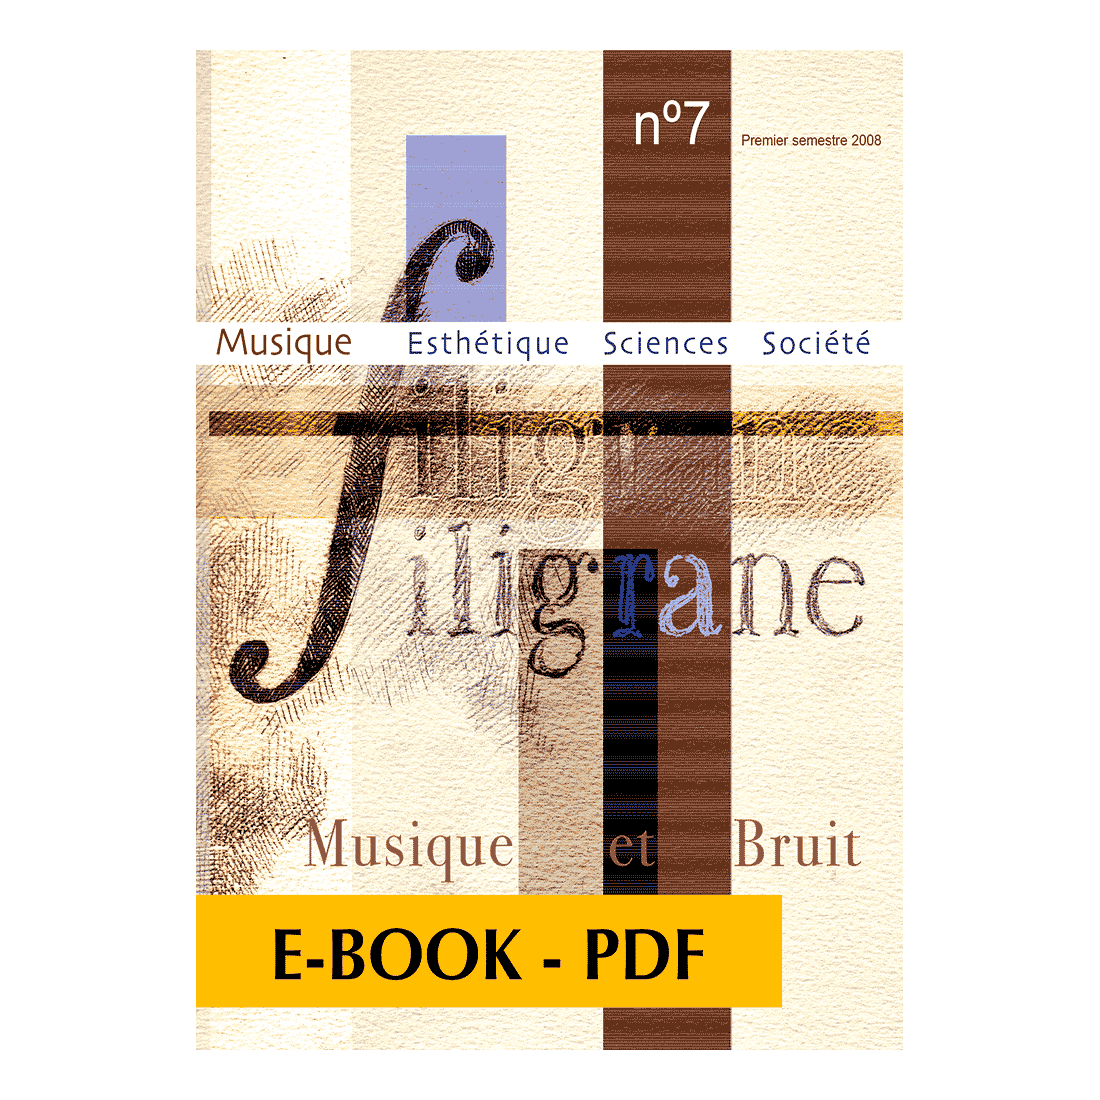 Revue Filigrane n°7 - Musique et bruit - E-book PDF